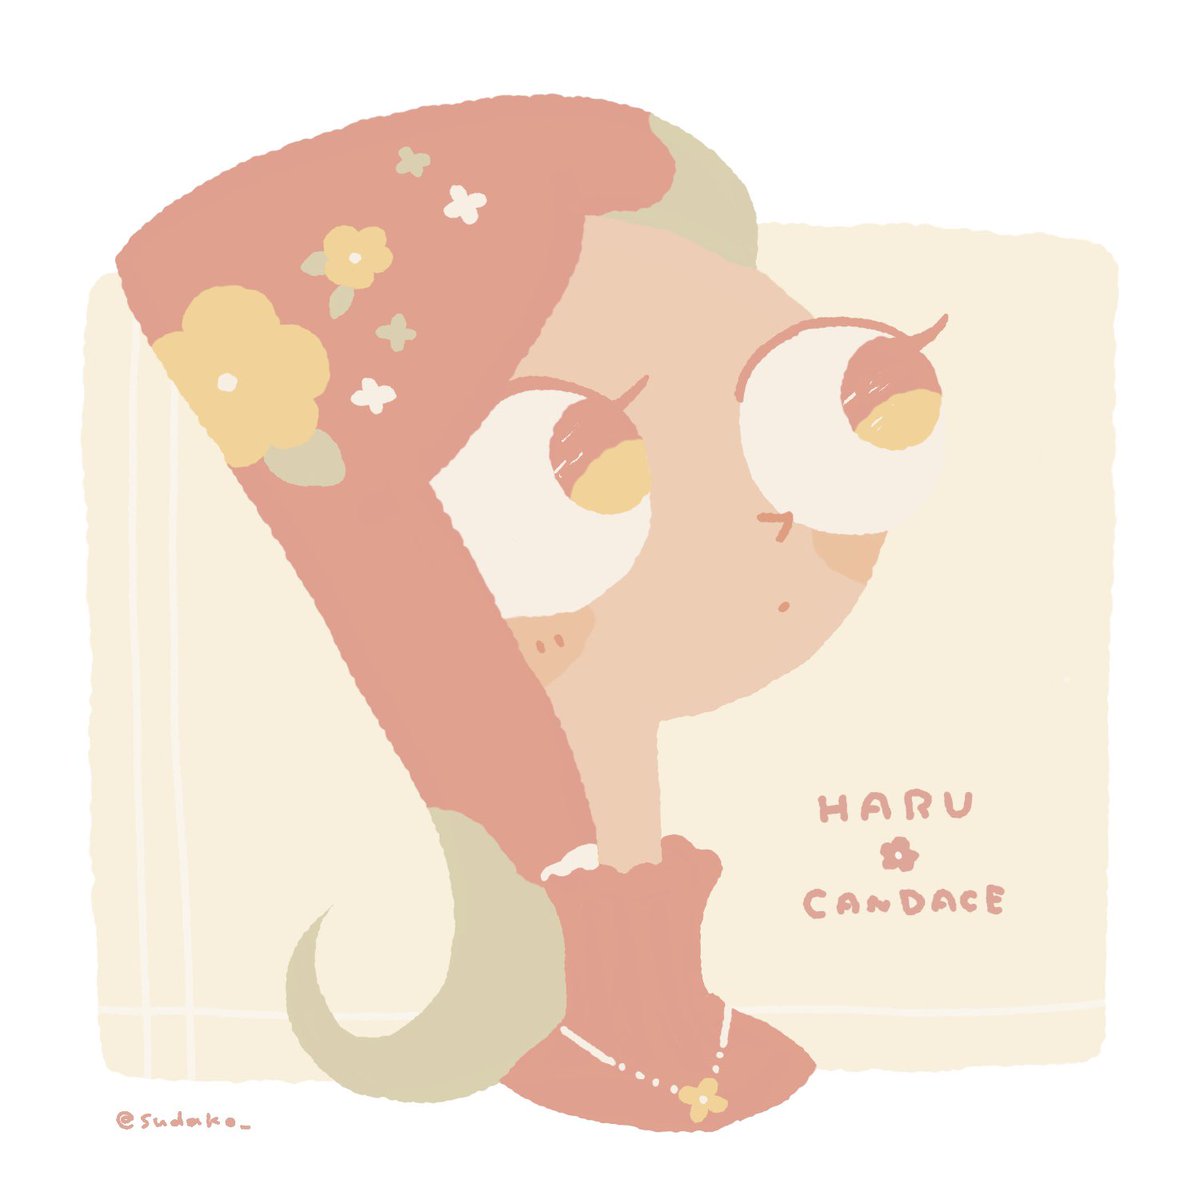 「春カラーなキャンディス 」|酢蛸🏖のイラスト